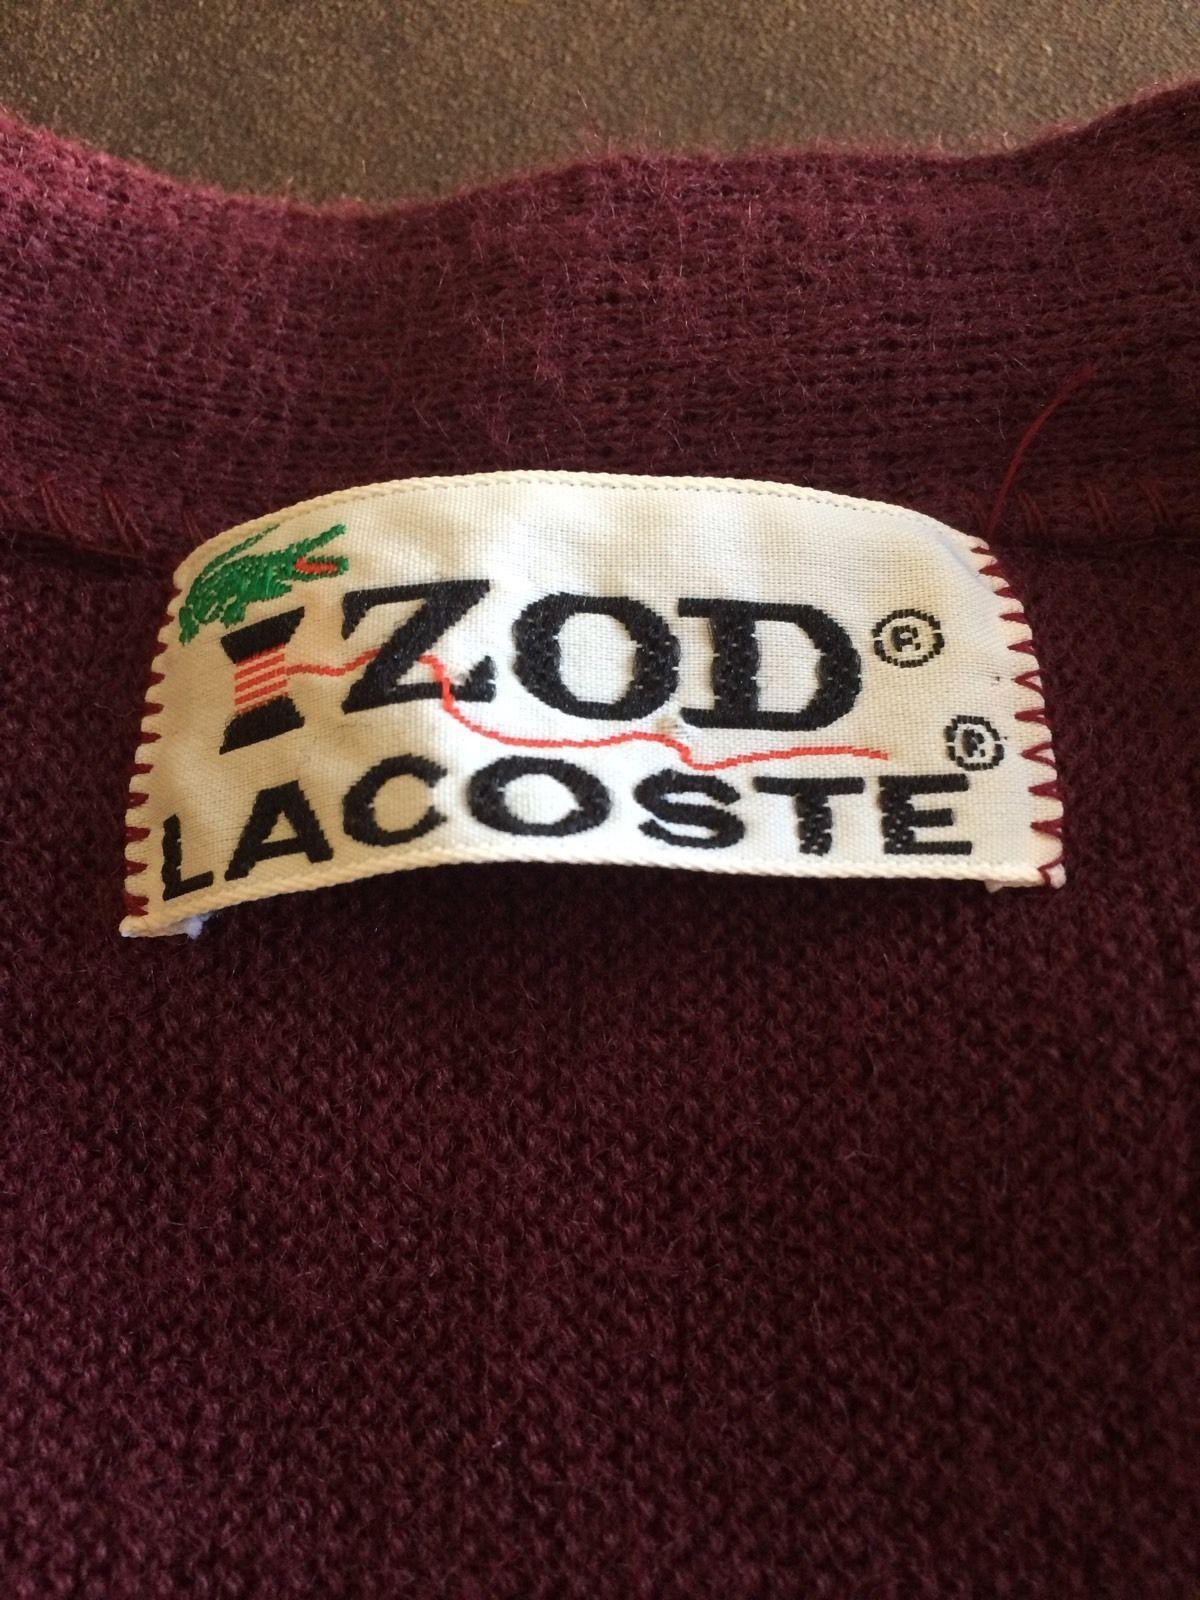 Izod Lacoste Logo - Izod Lacoste Vintage Cardigan With Blue Alligator Logo